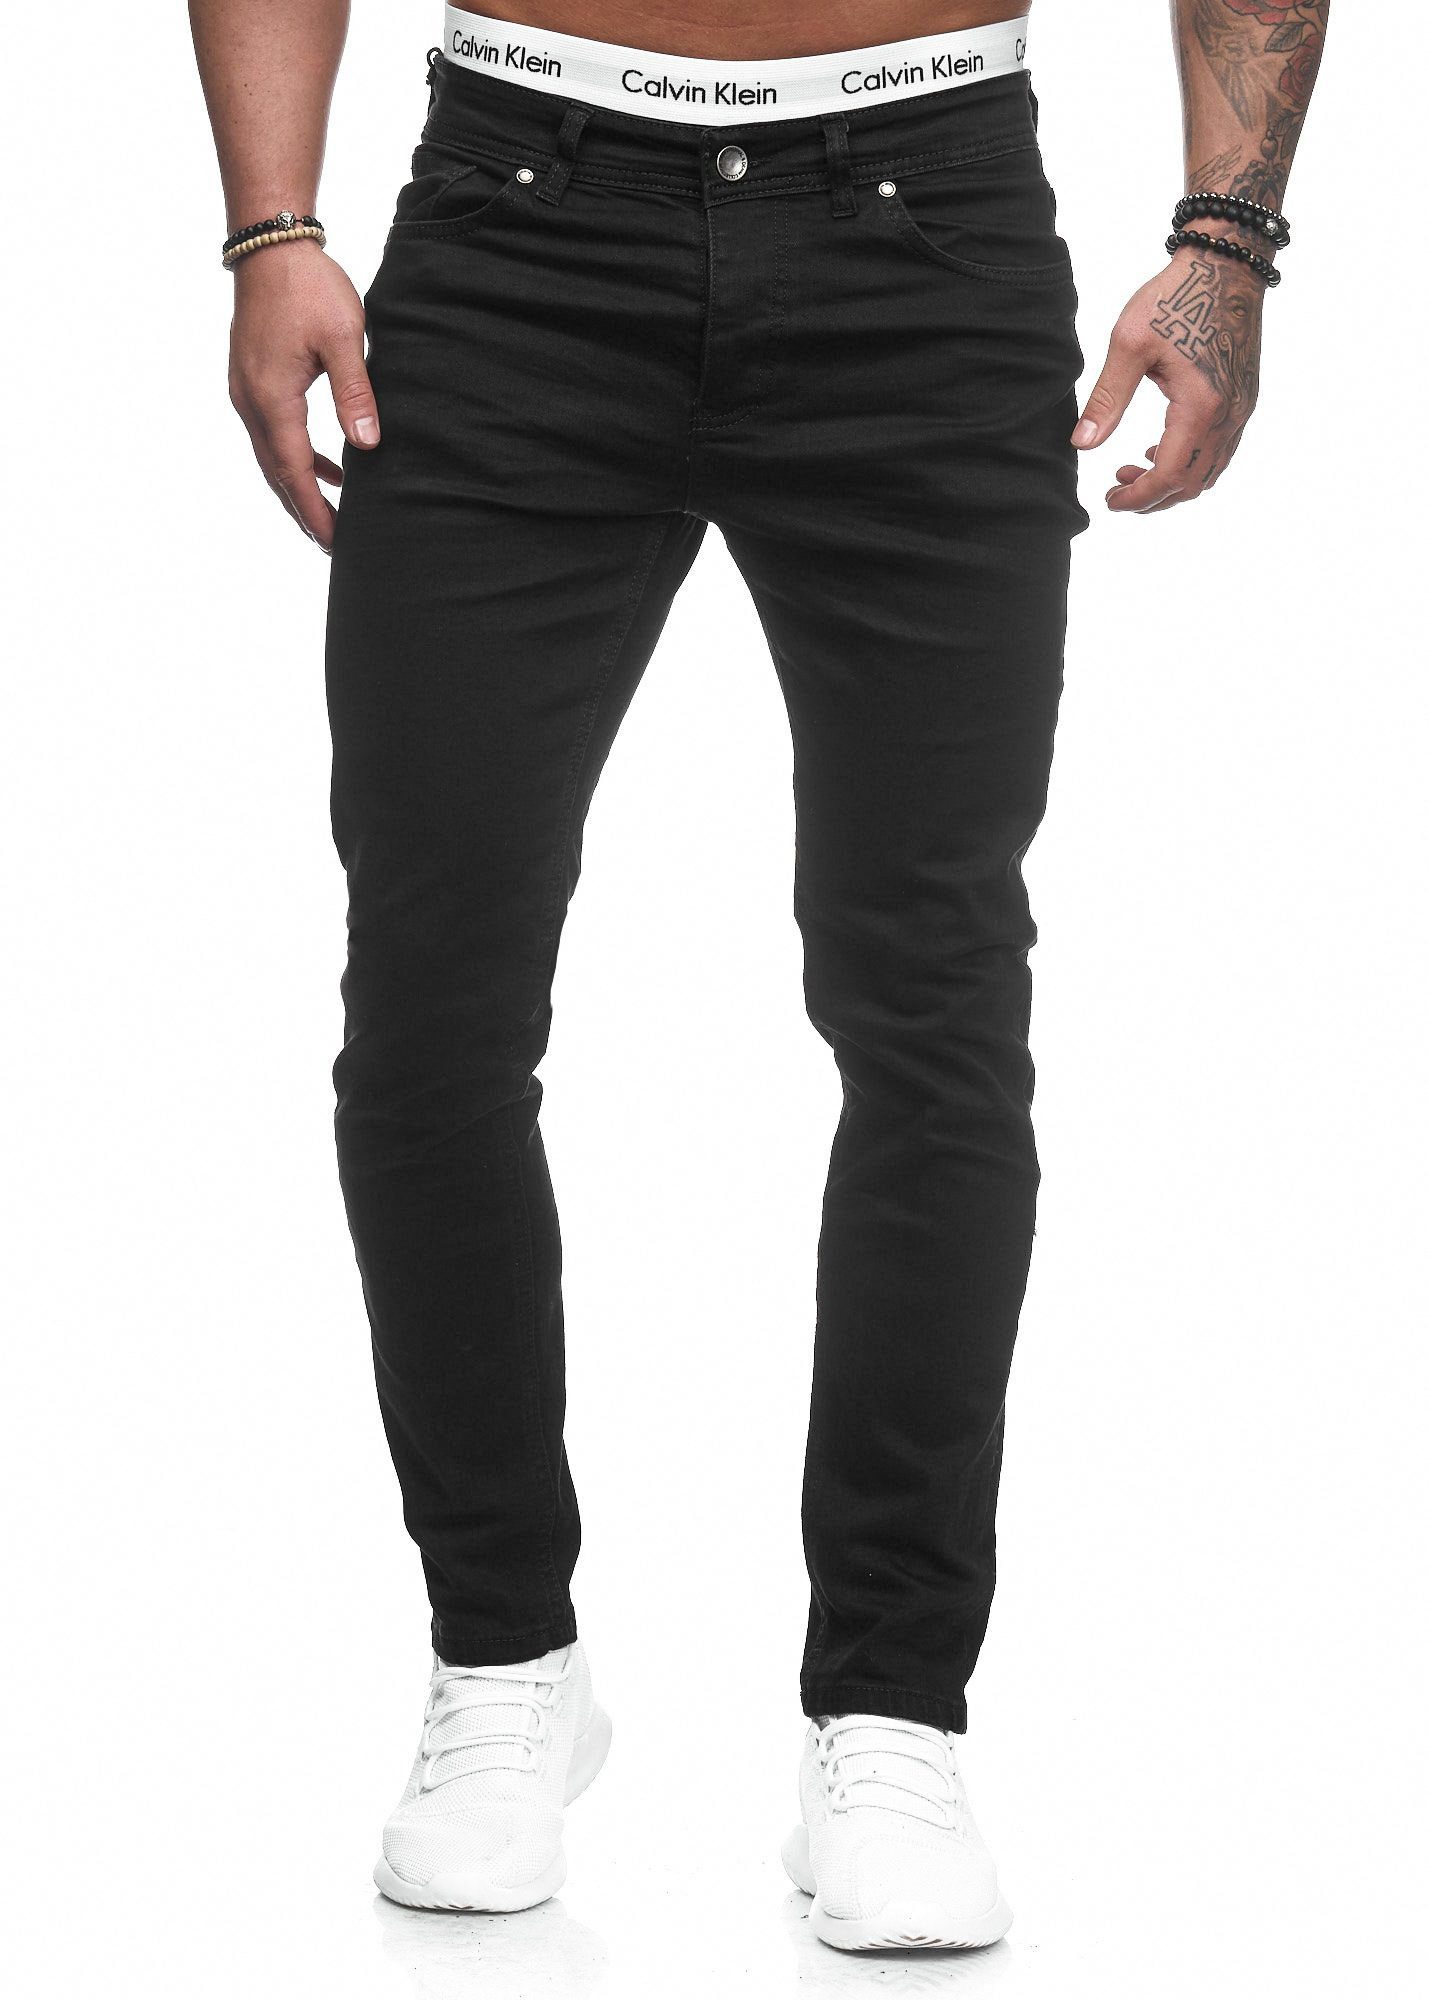 Code47 Slim-fit-Jeans Herren Designer Chino Jeans Hose Basic Stretch Jeanshose Slim Fit Schwarz 5078